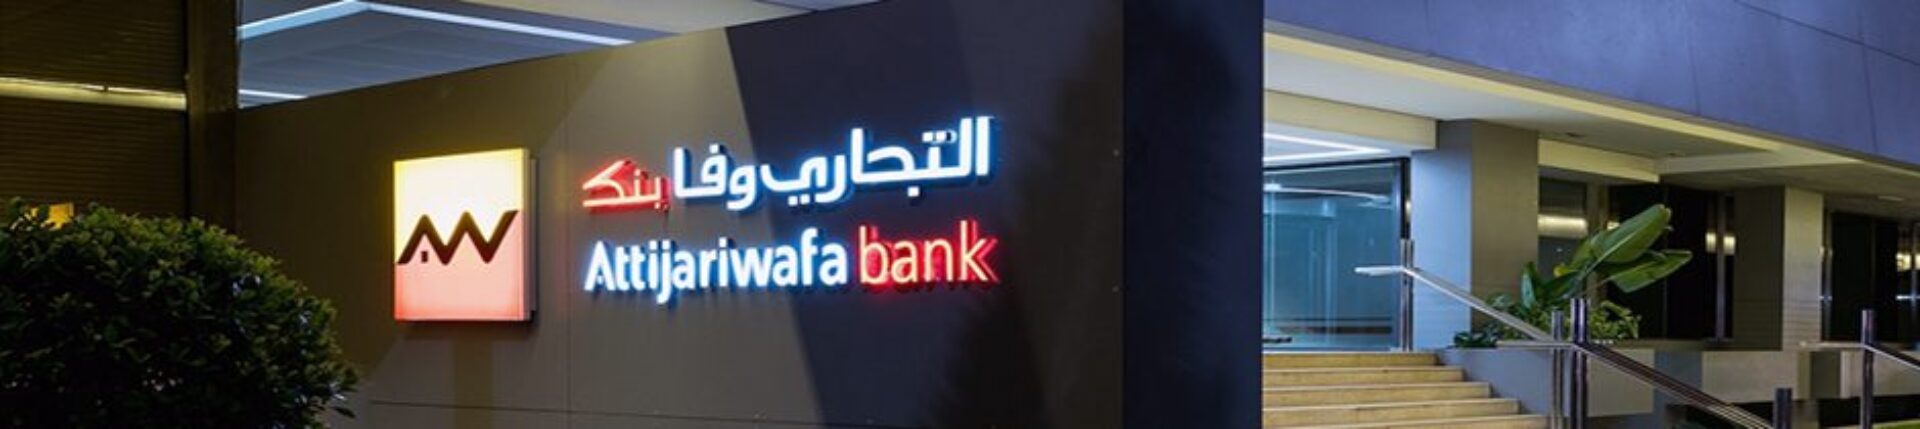 moroccan attijariwafa bank banner